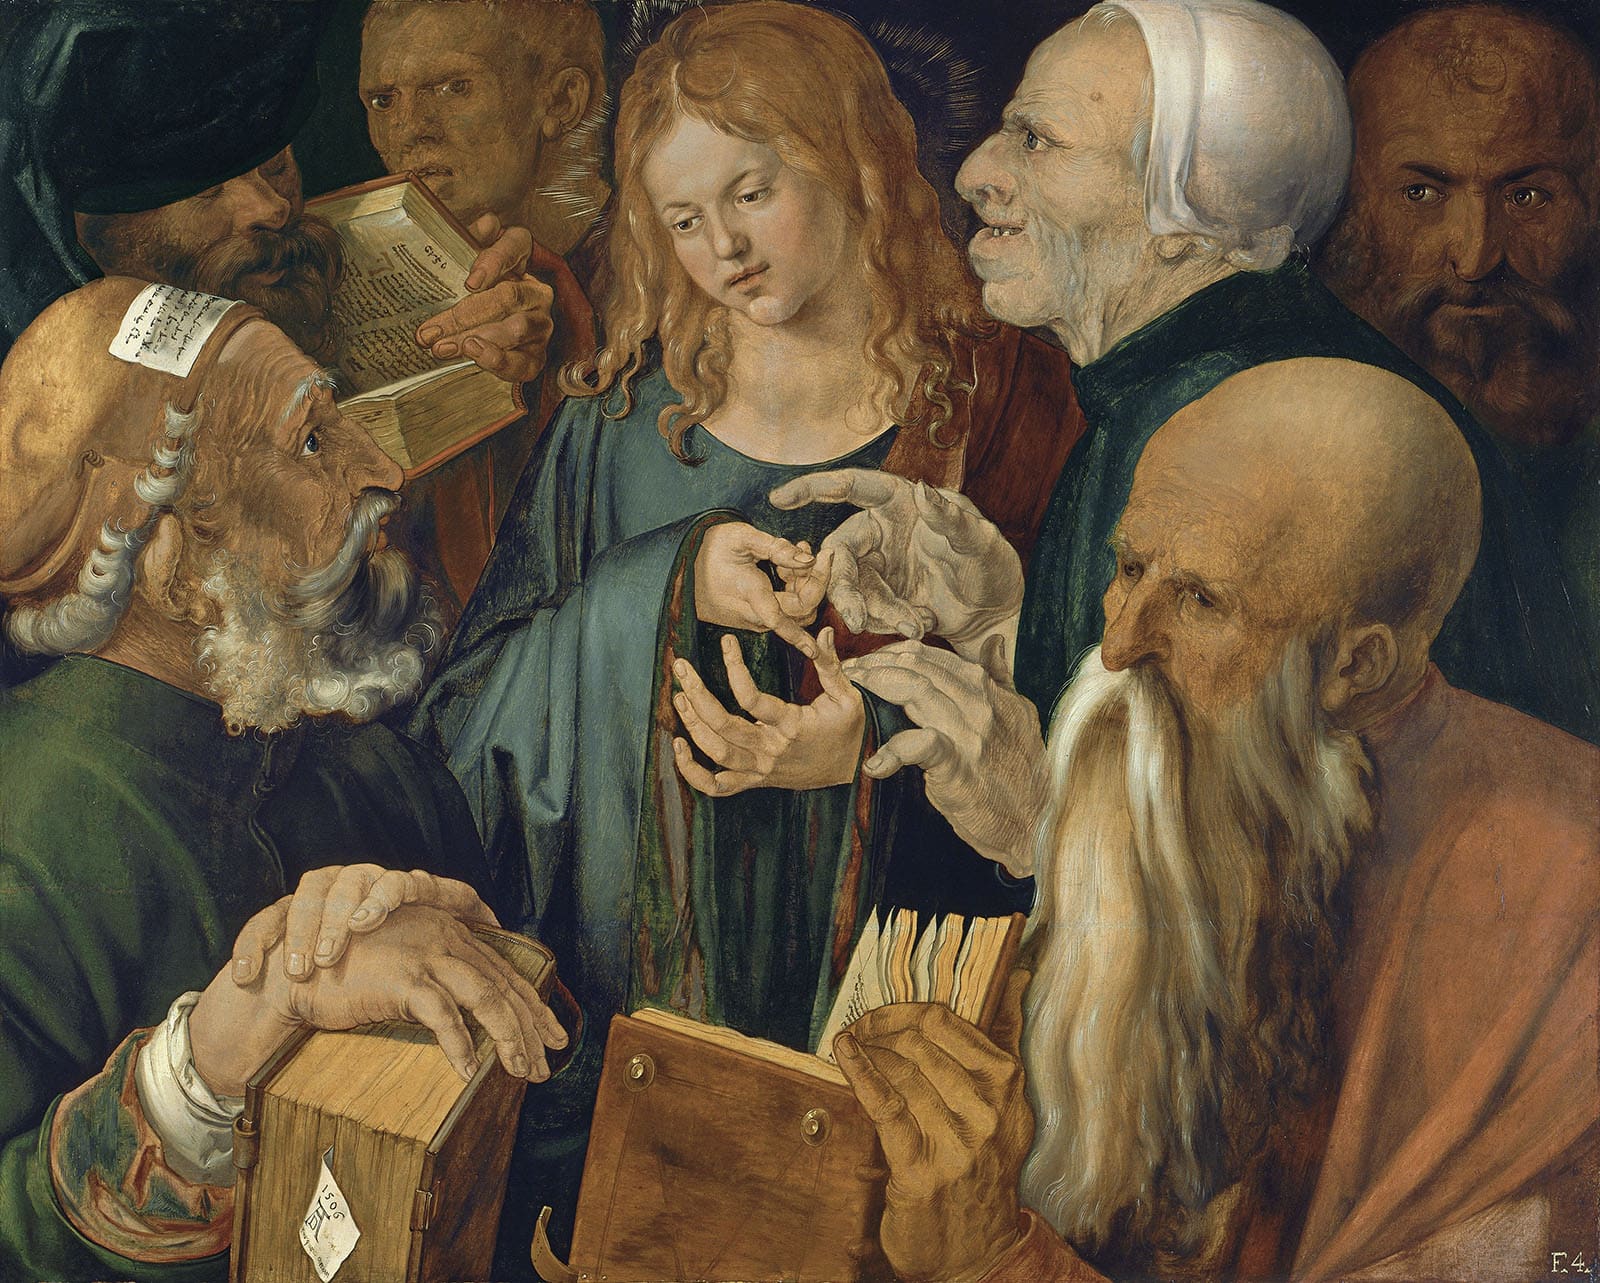 Dürer, Albrecht. Christ among the Doctors. 1506